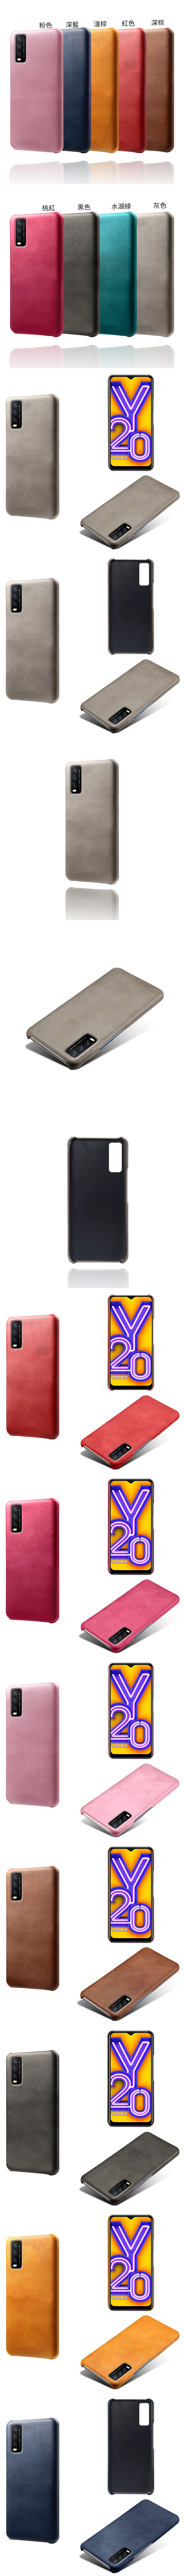 Vivo Y20 Y20s 皮革保護殼(PLAIN) - 牛皮仿真皮紋單色背蓋素色多色手機殼保護套手機套